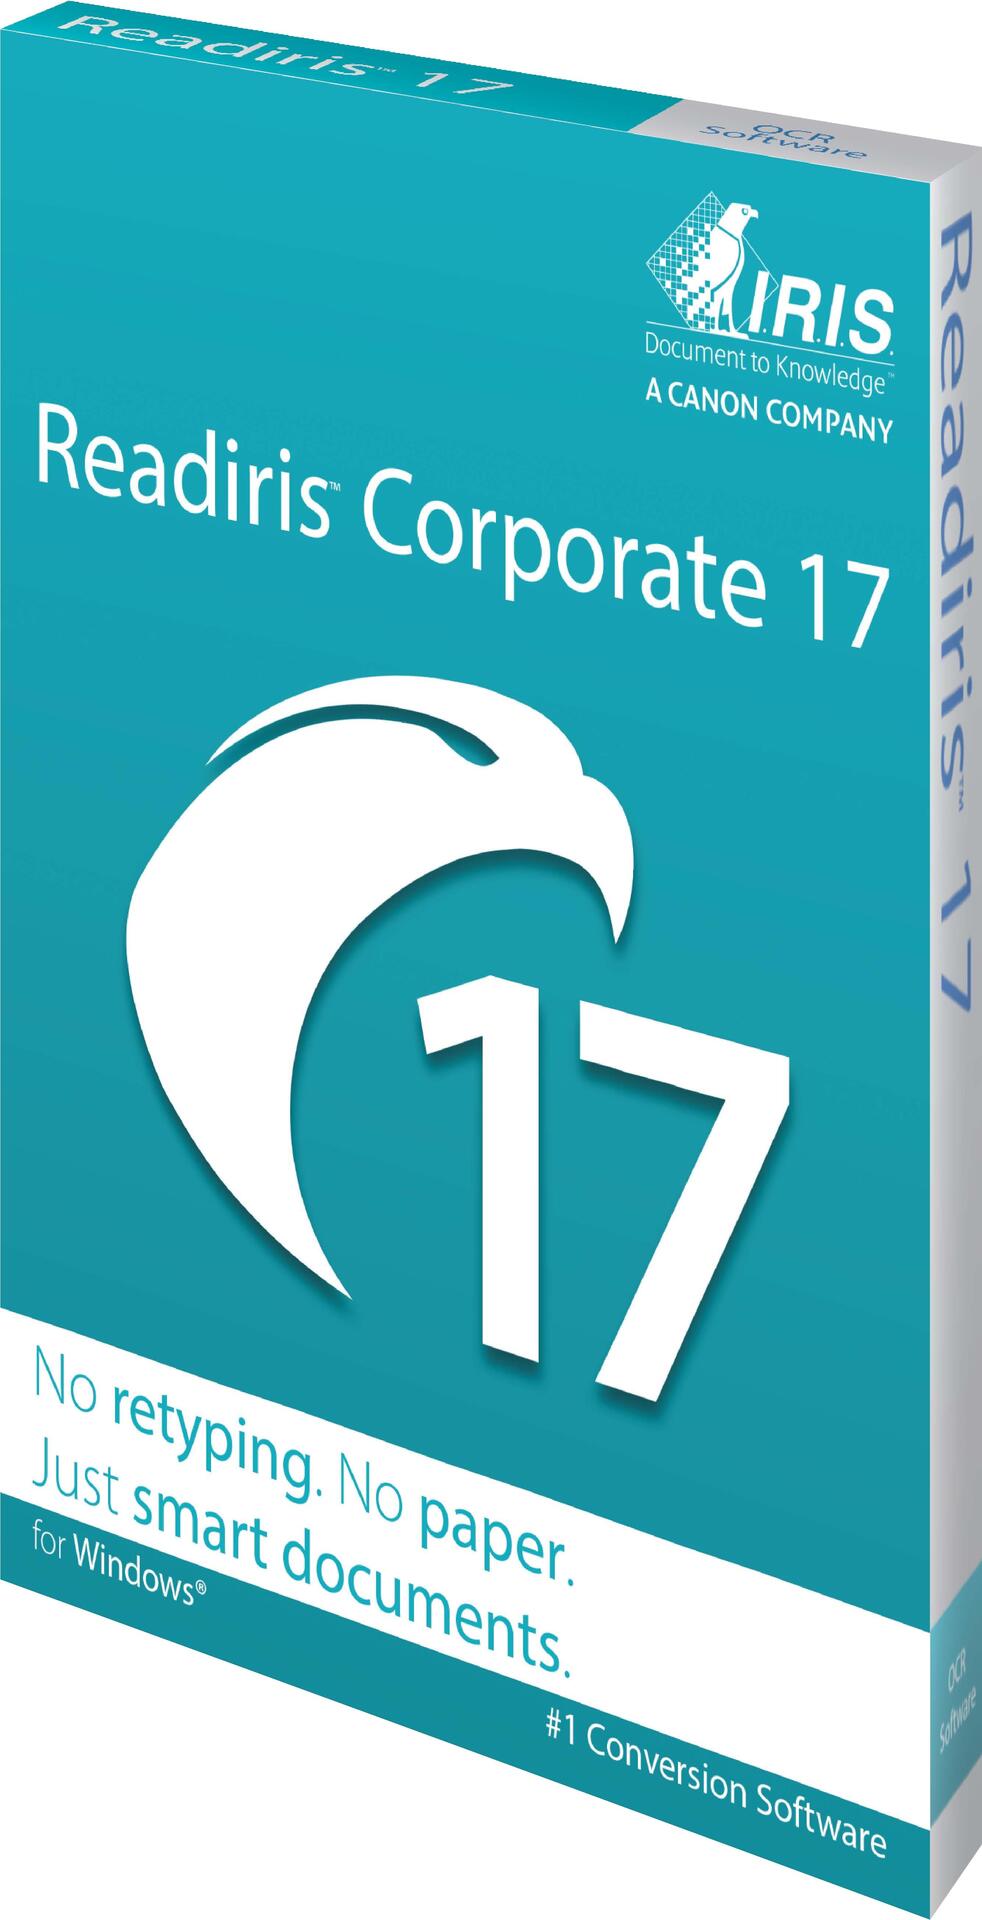 I.R.I.S. IRIS Readiris Corporate (459410)